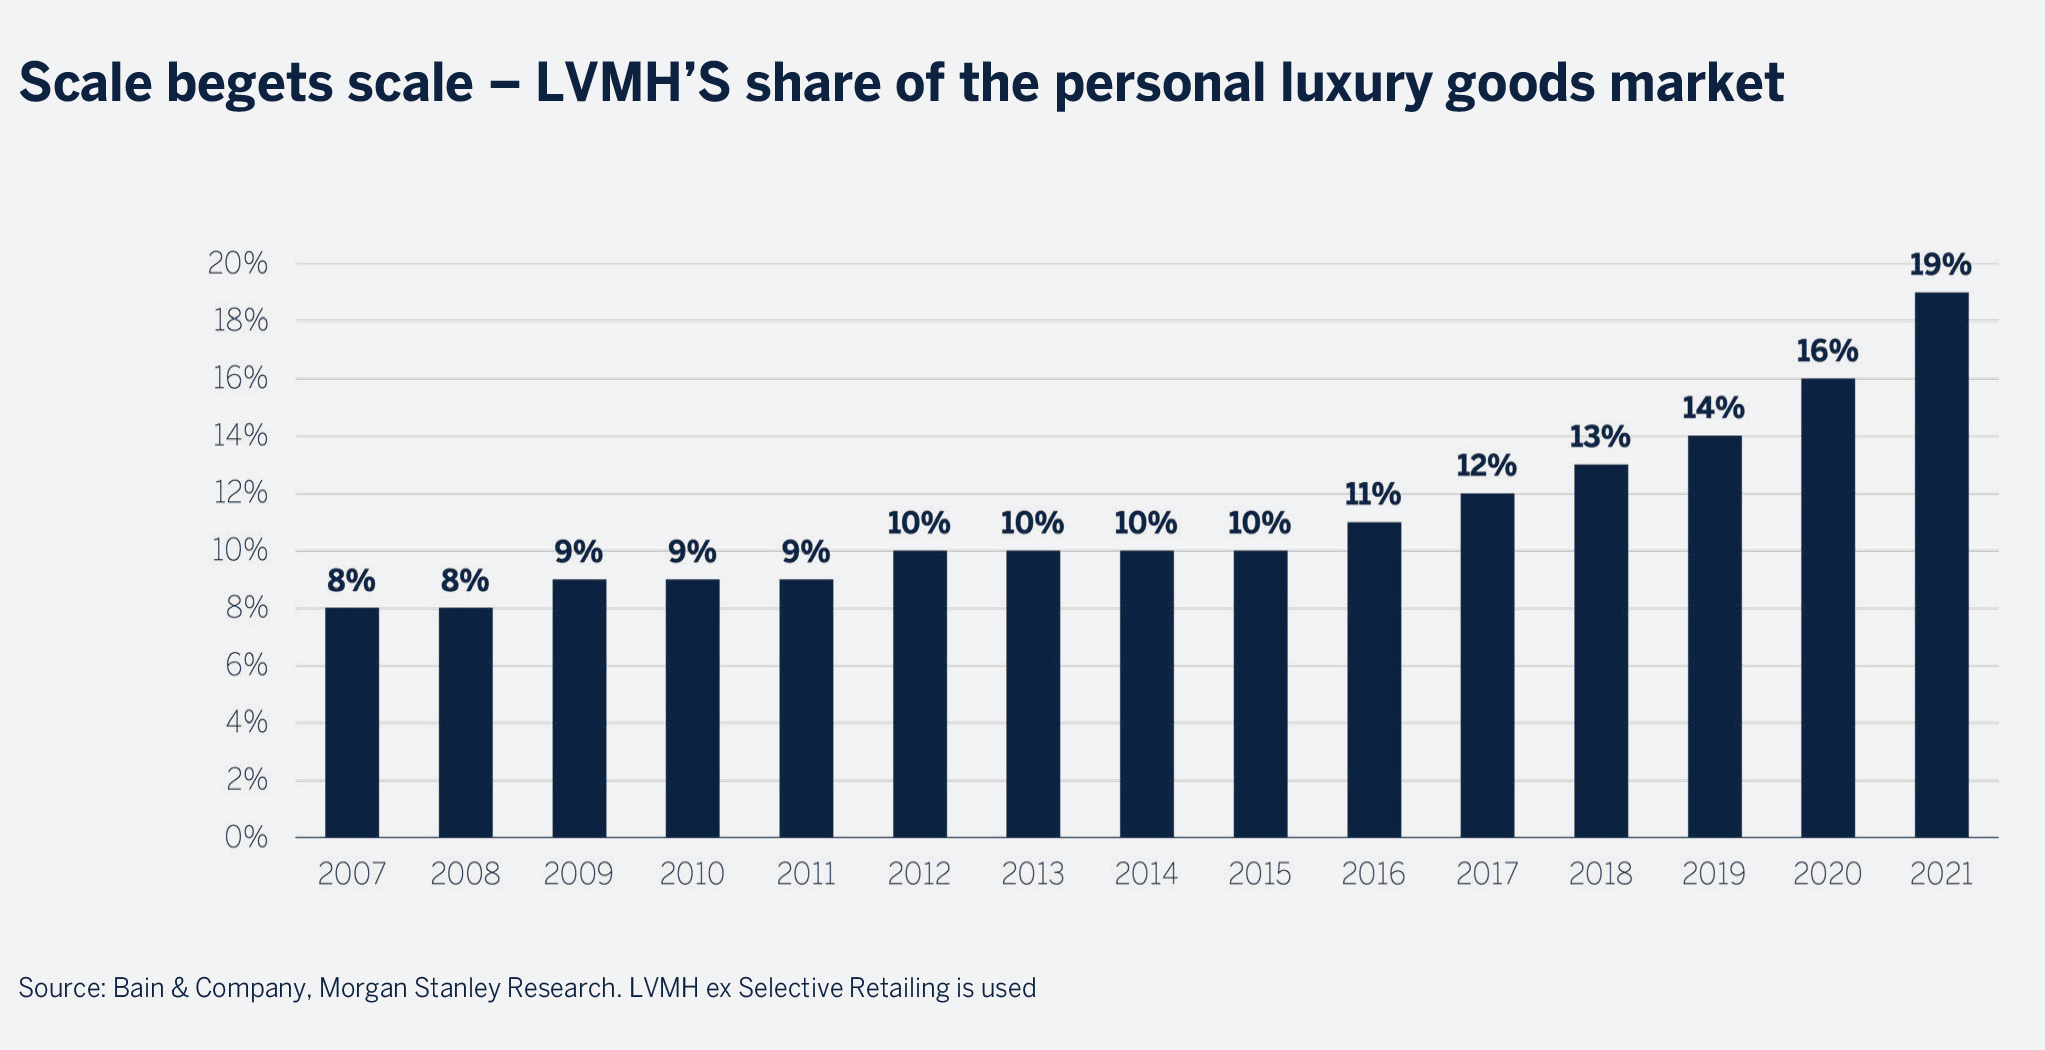 Diversification into luxury goods. Agenda Luxury Industry Moet